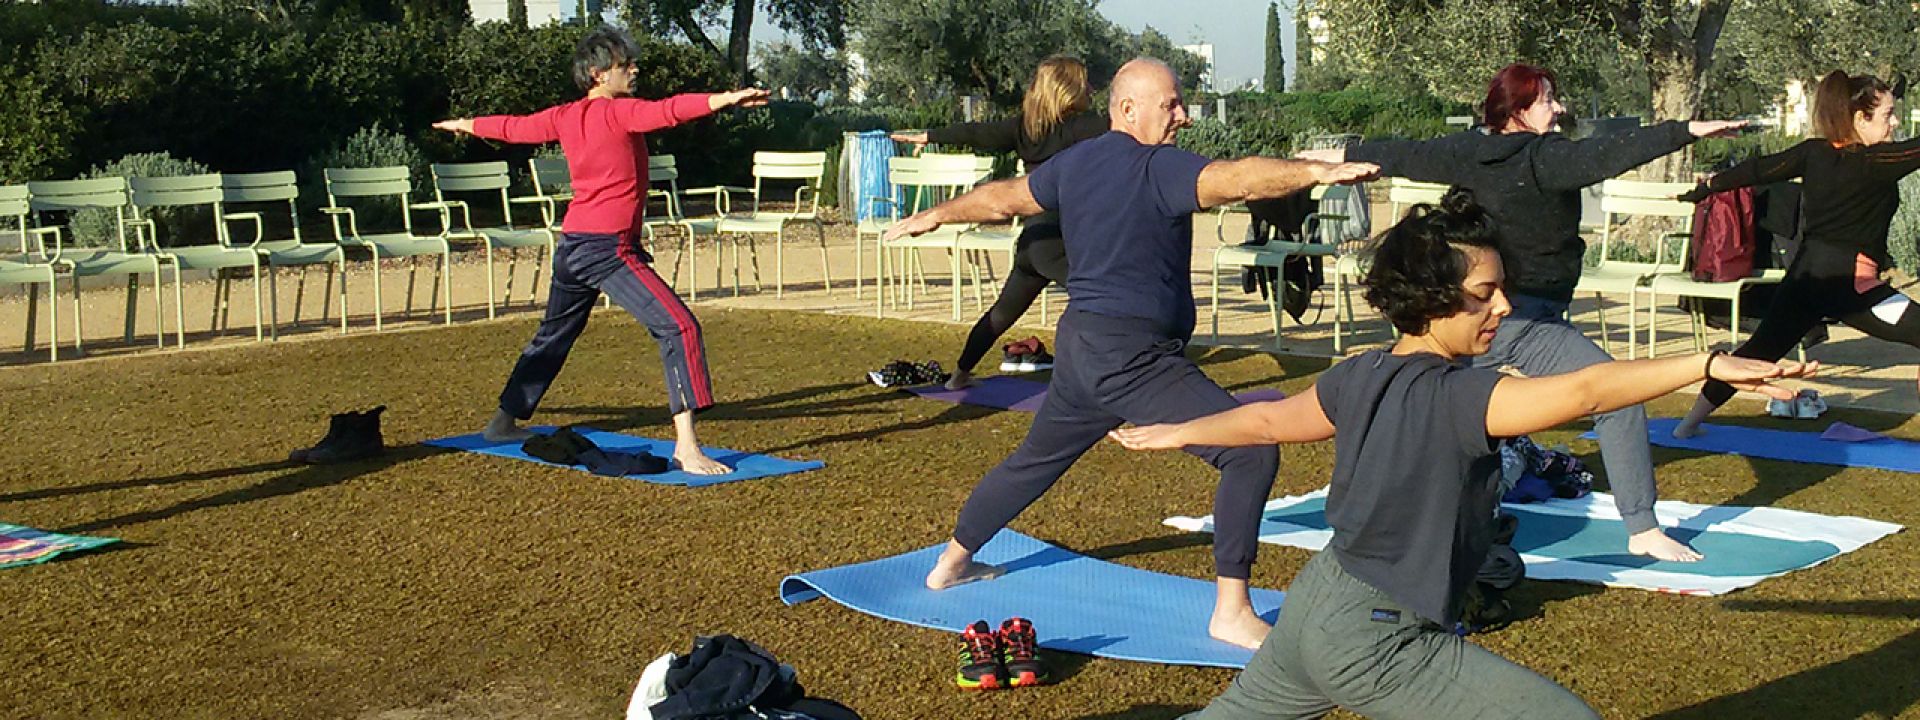 Φωτογραφία που απεικονίζει ανθρώπους να κάνουν yoga στο ΚΠΙΣΝ